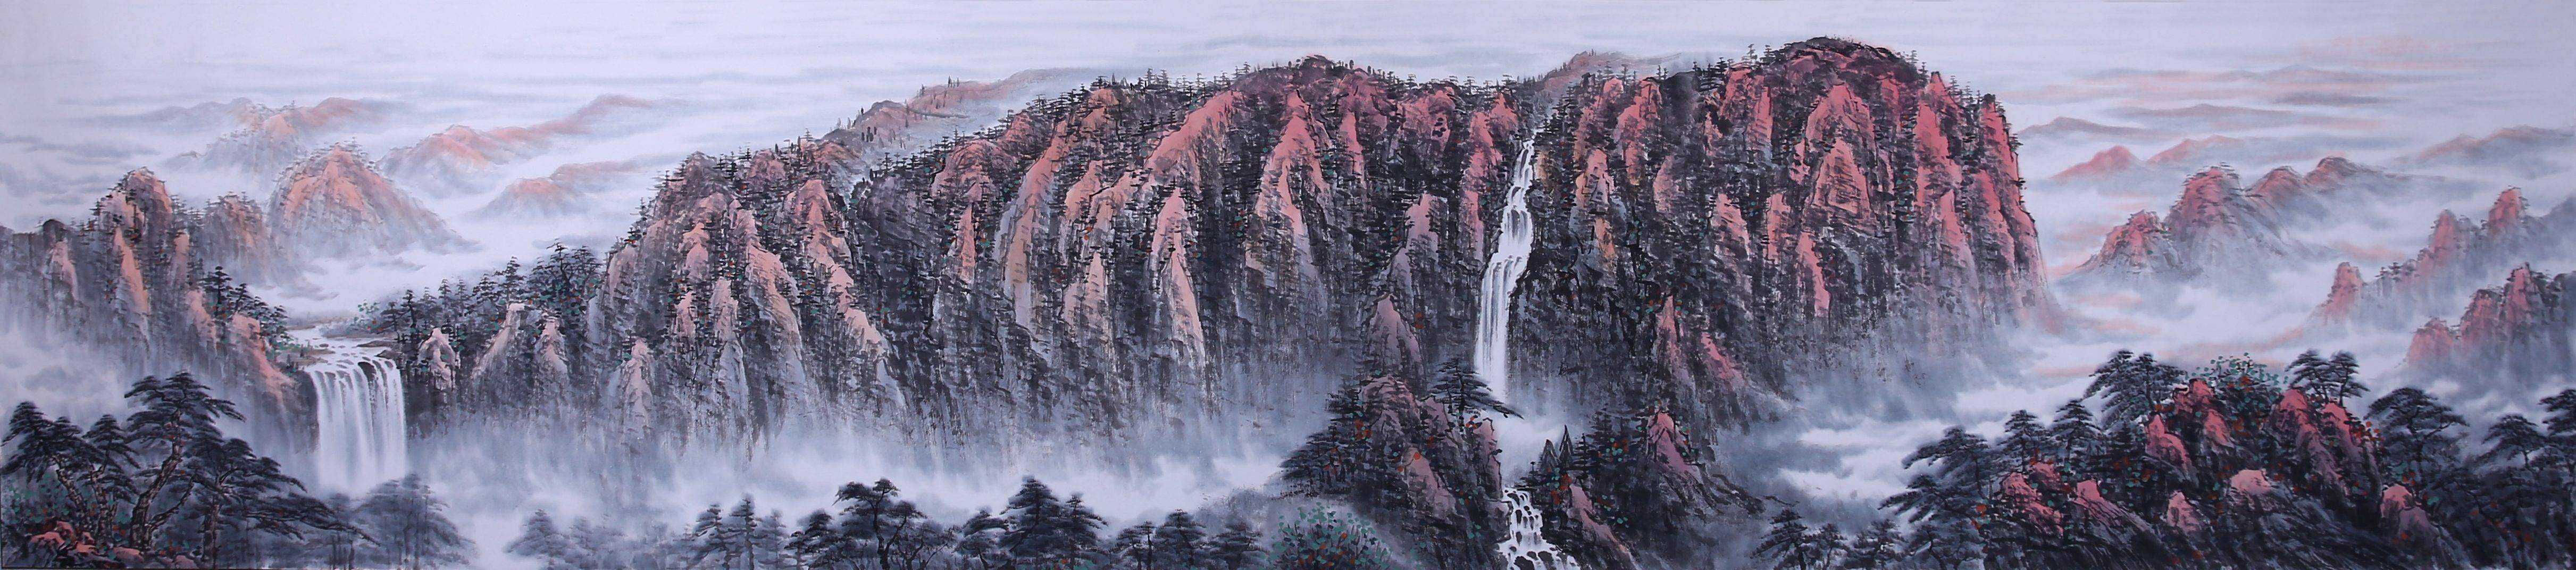 10幅山水瀑布的经典画法错过就很难再找到了